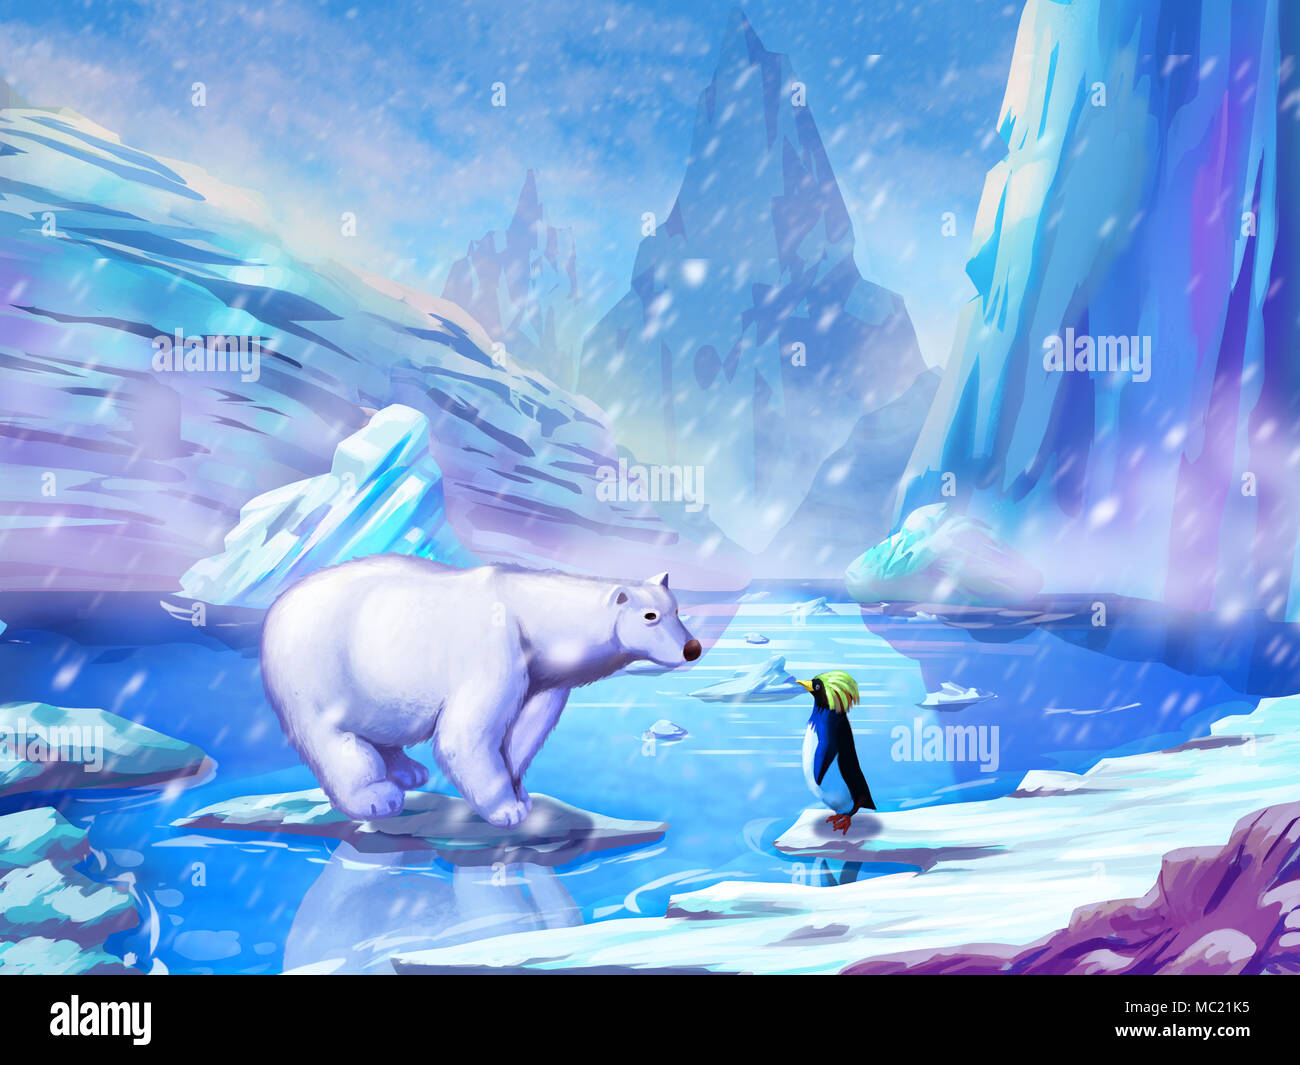 L'ours et le Pingouin, réaliste et fantastique avec un style futuriste. Jeu vidéo numérique du CG Art, Concept Illustration, Caricature réaliste Banque D'Images